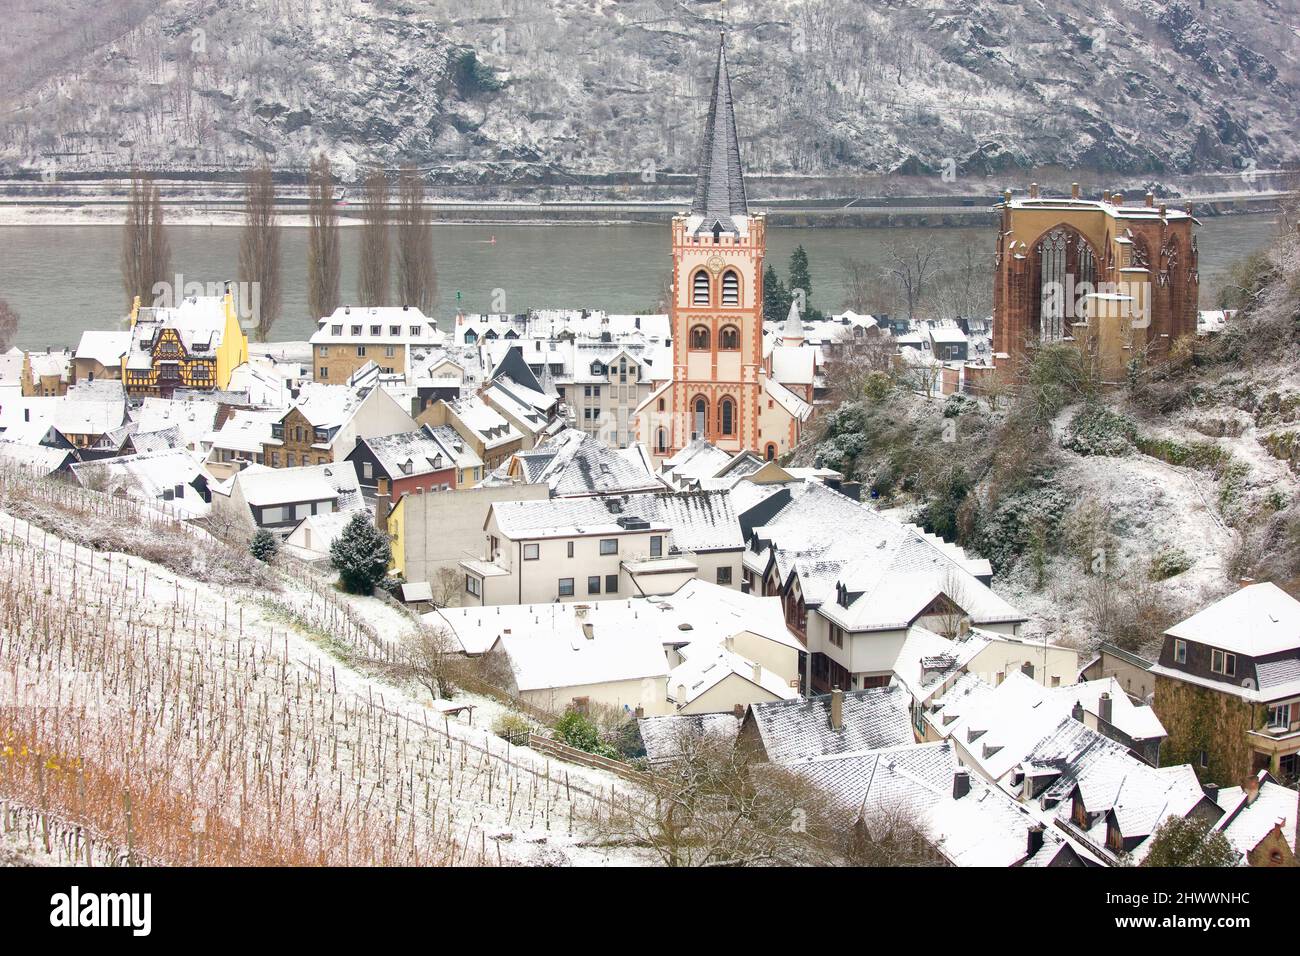 Vue d'ensemble de Bacharach et des vignobles environnants en hiver, Rhénanie-Palatinat, Allemagne Banque D'Images